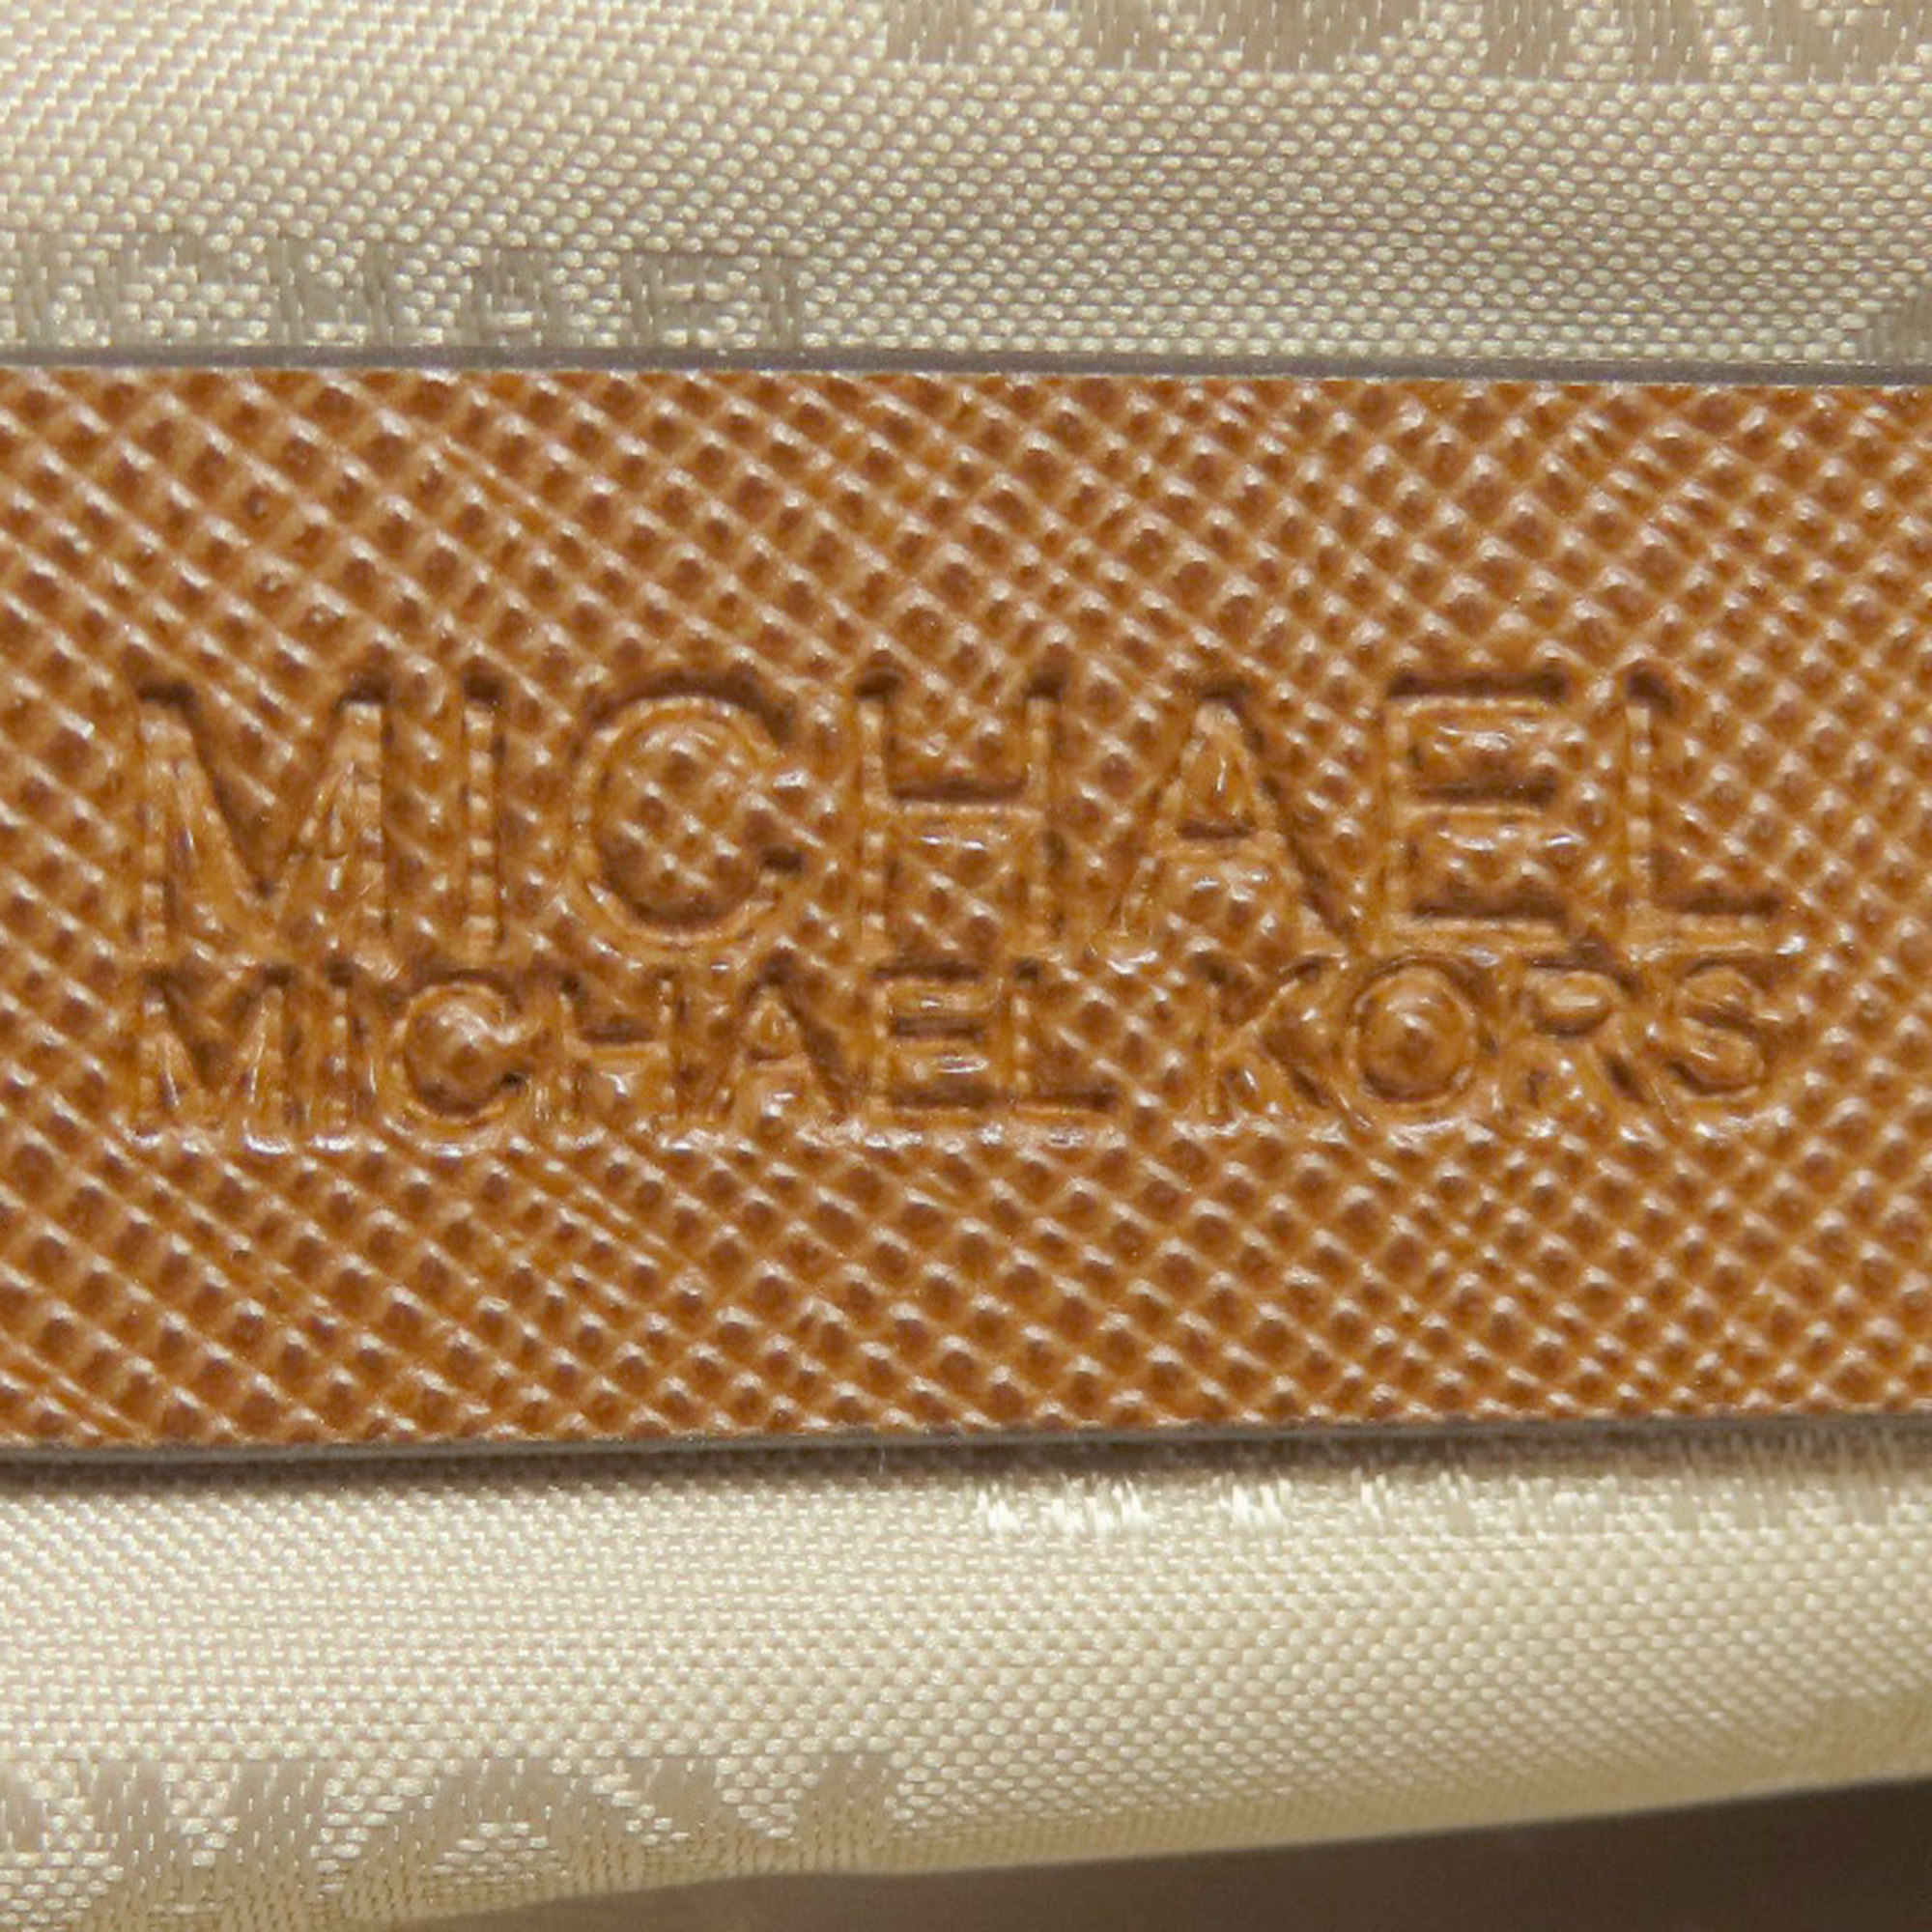 Michael Kors MK Signature Tote Bag PVC Women's